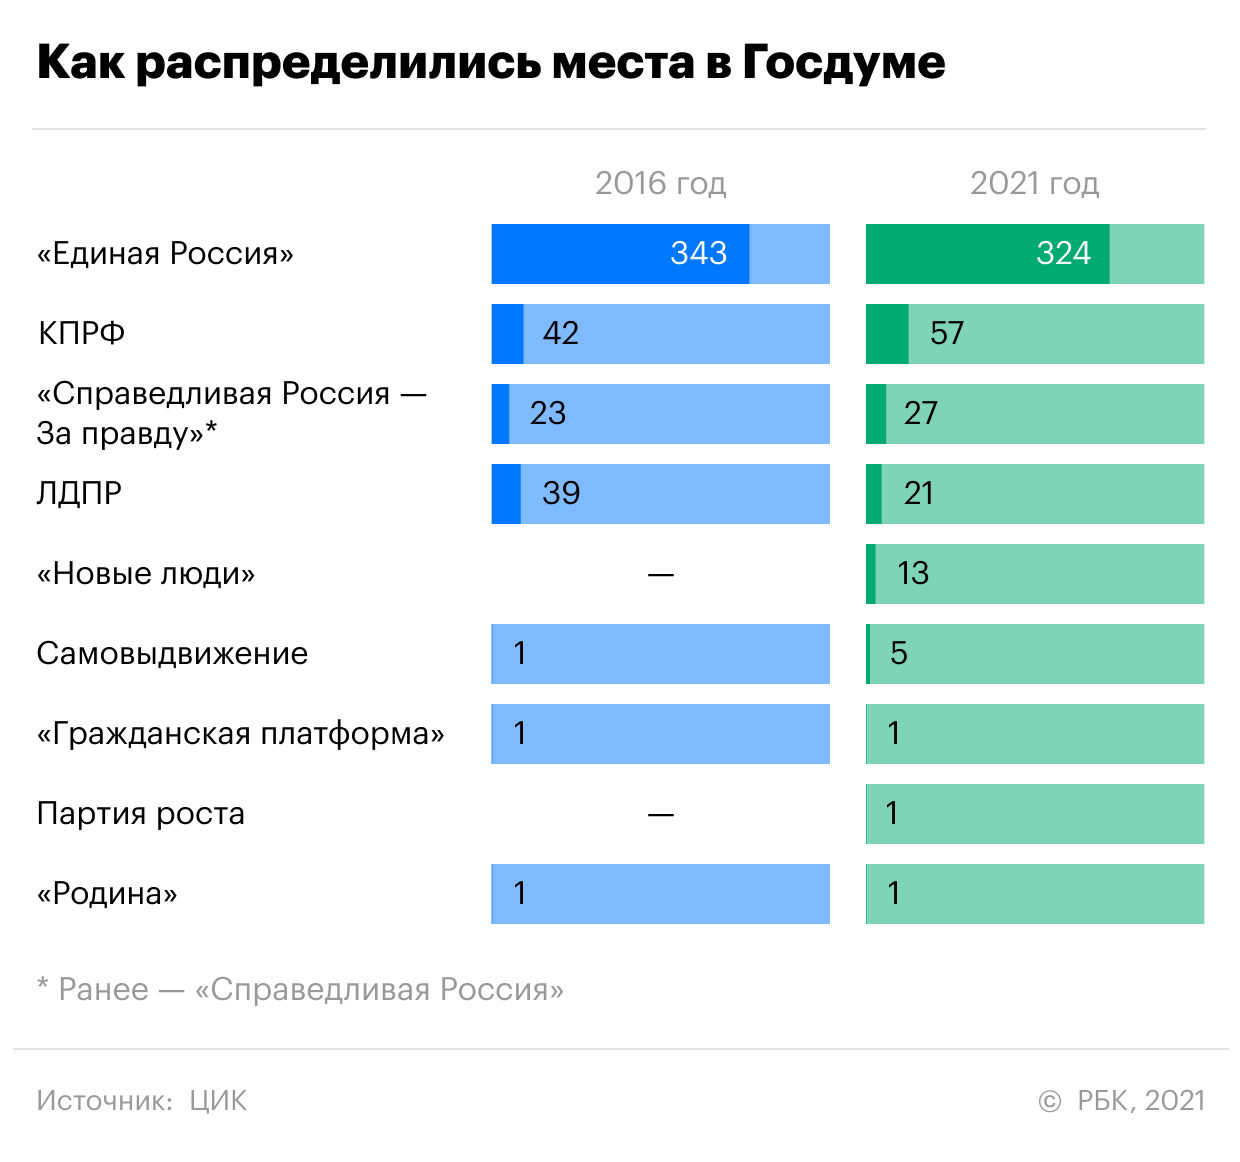 Как после выборов изменилась расстановка сил в Госдуме. Инфографика